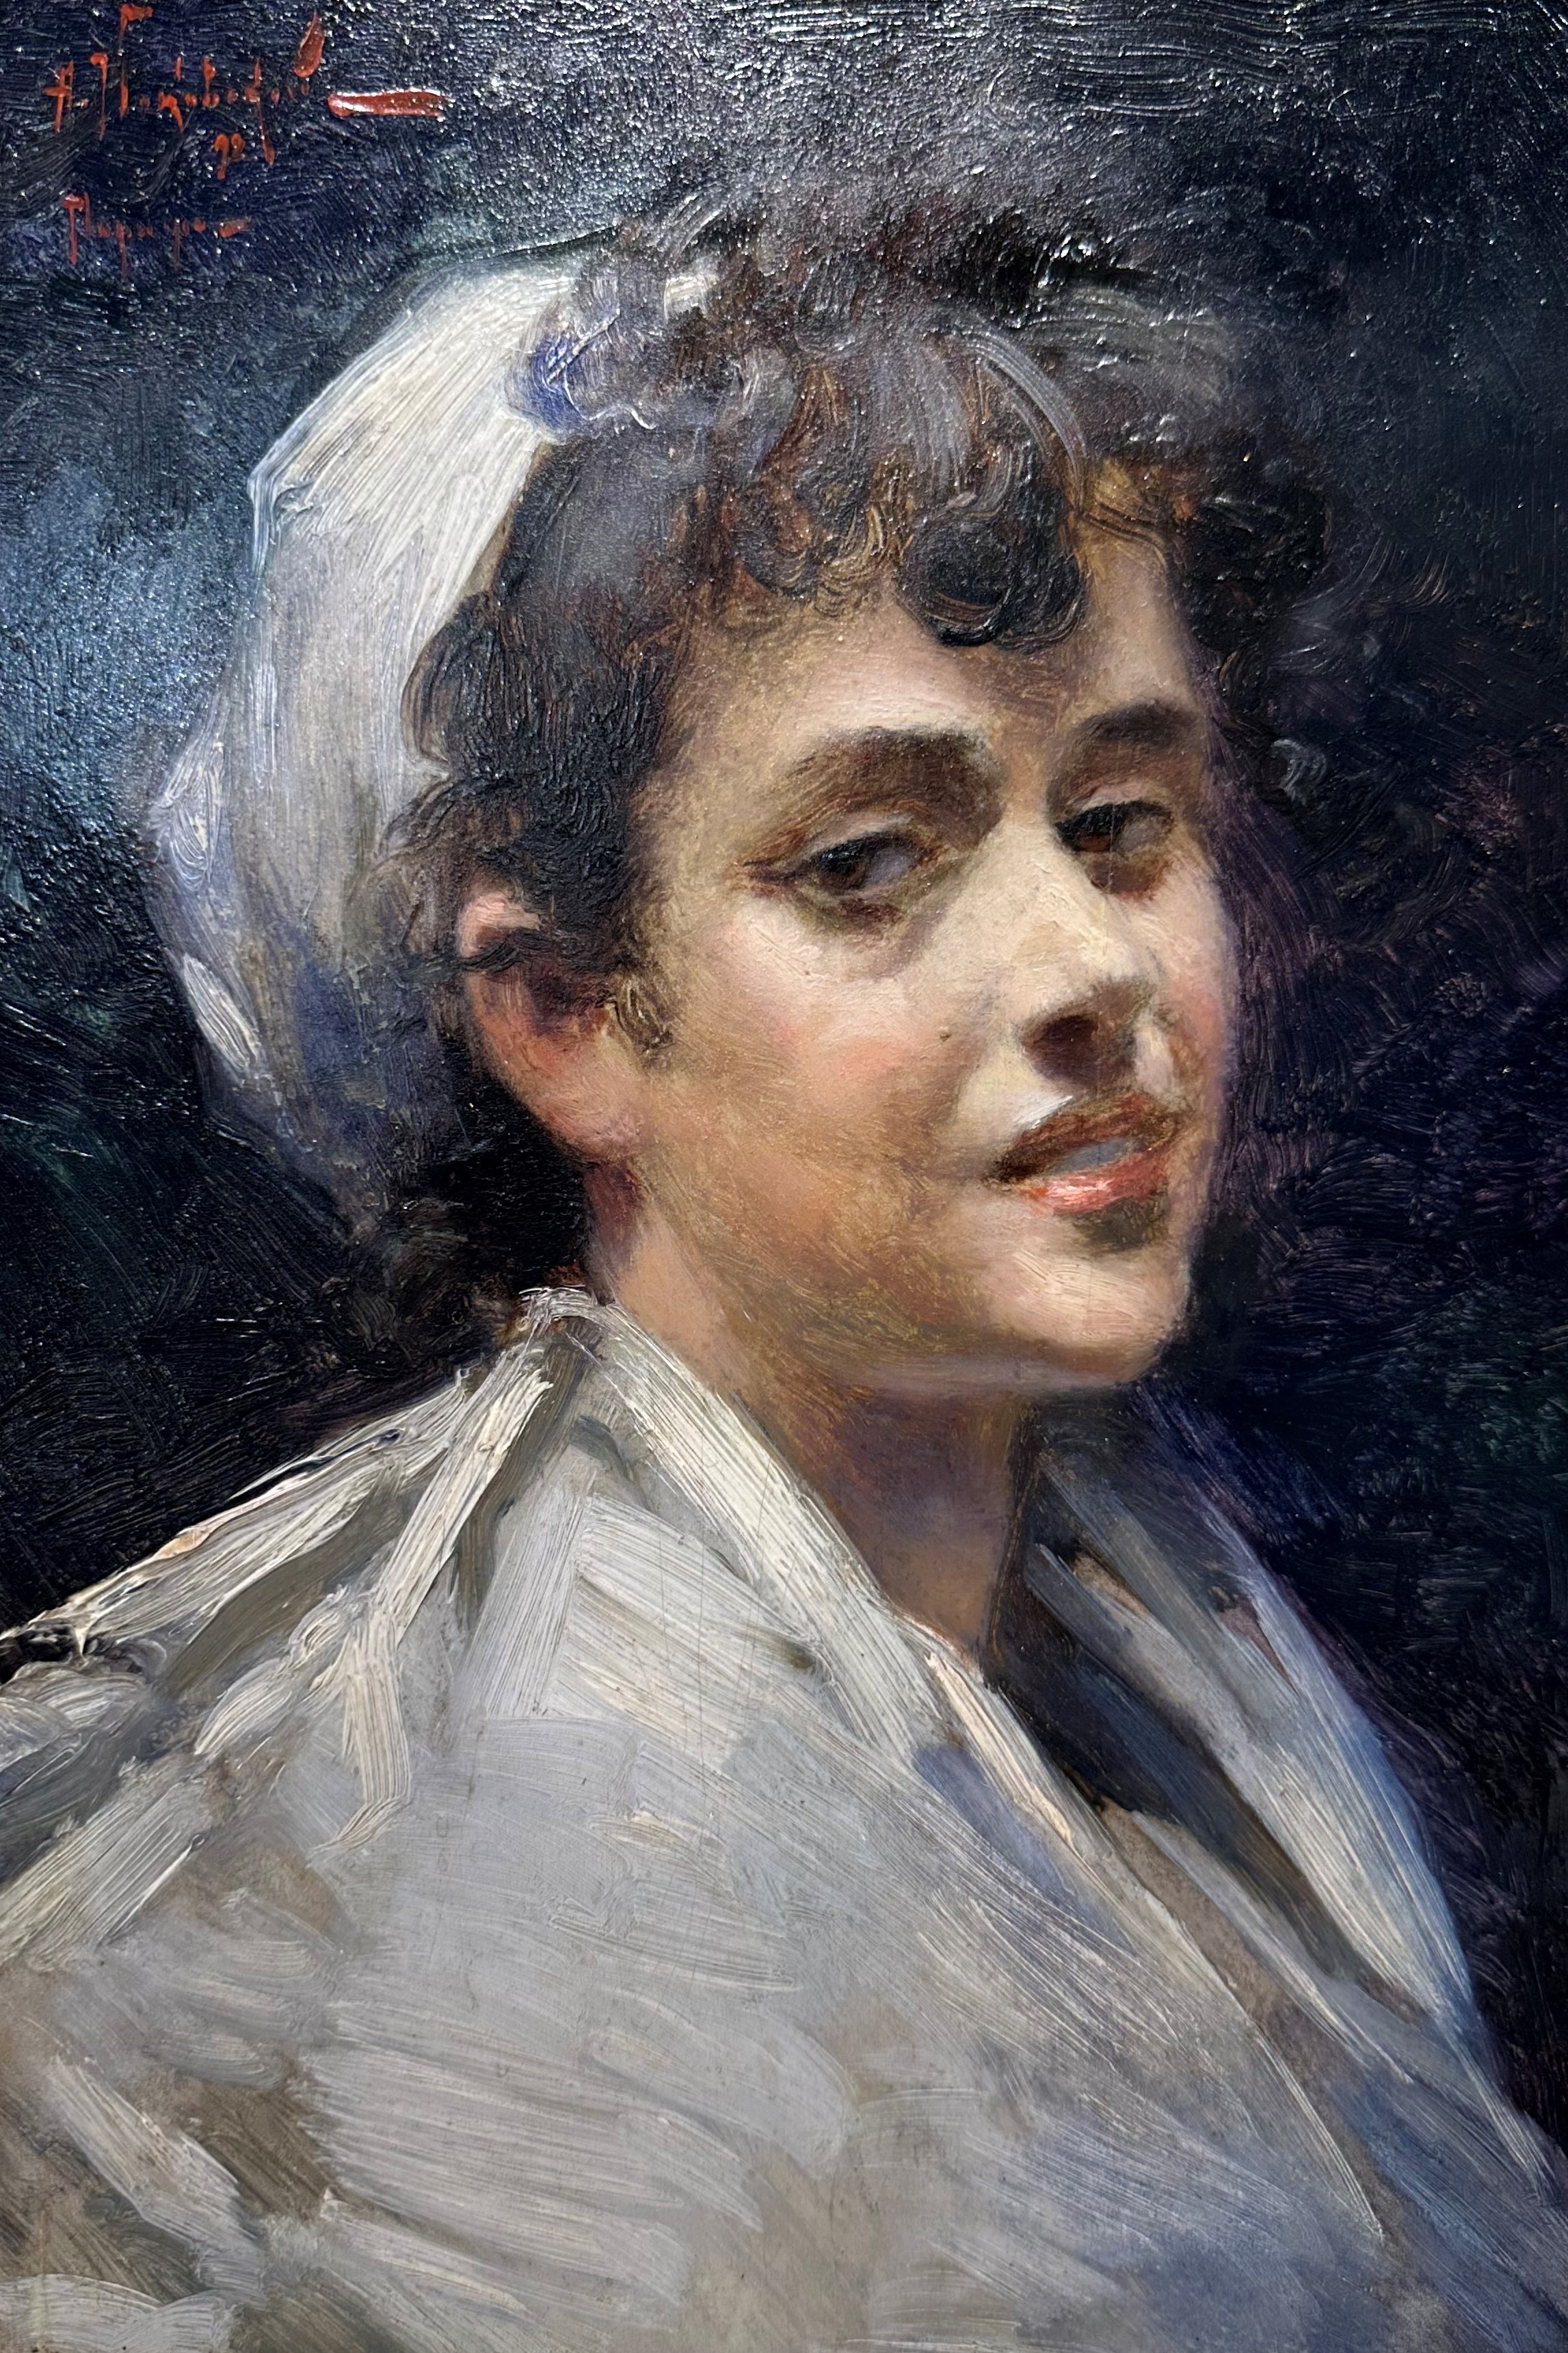 Маковский А.В., Портрет девушки, 1892 г. 